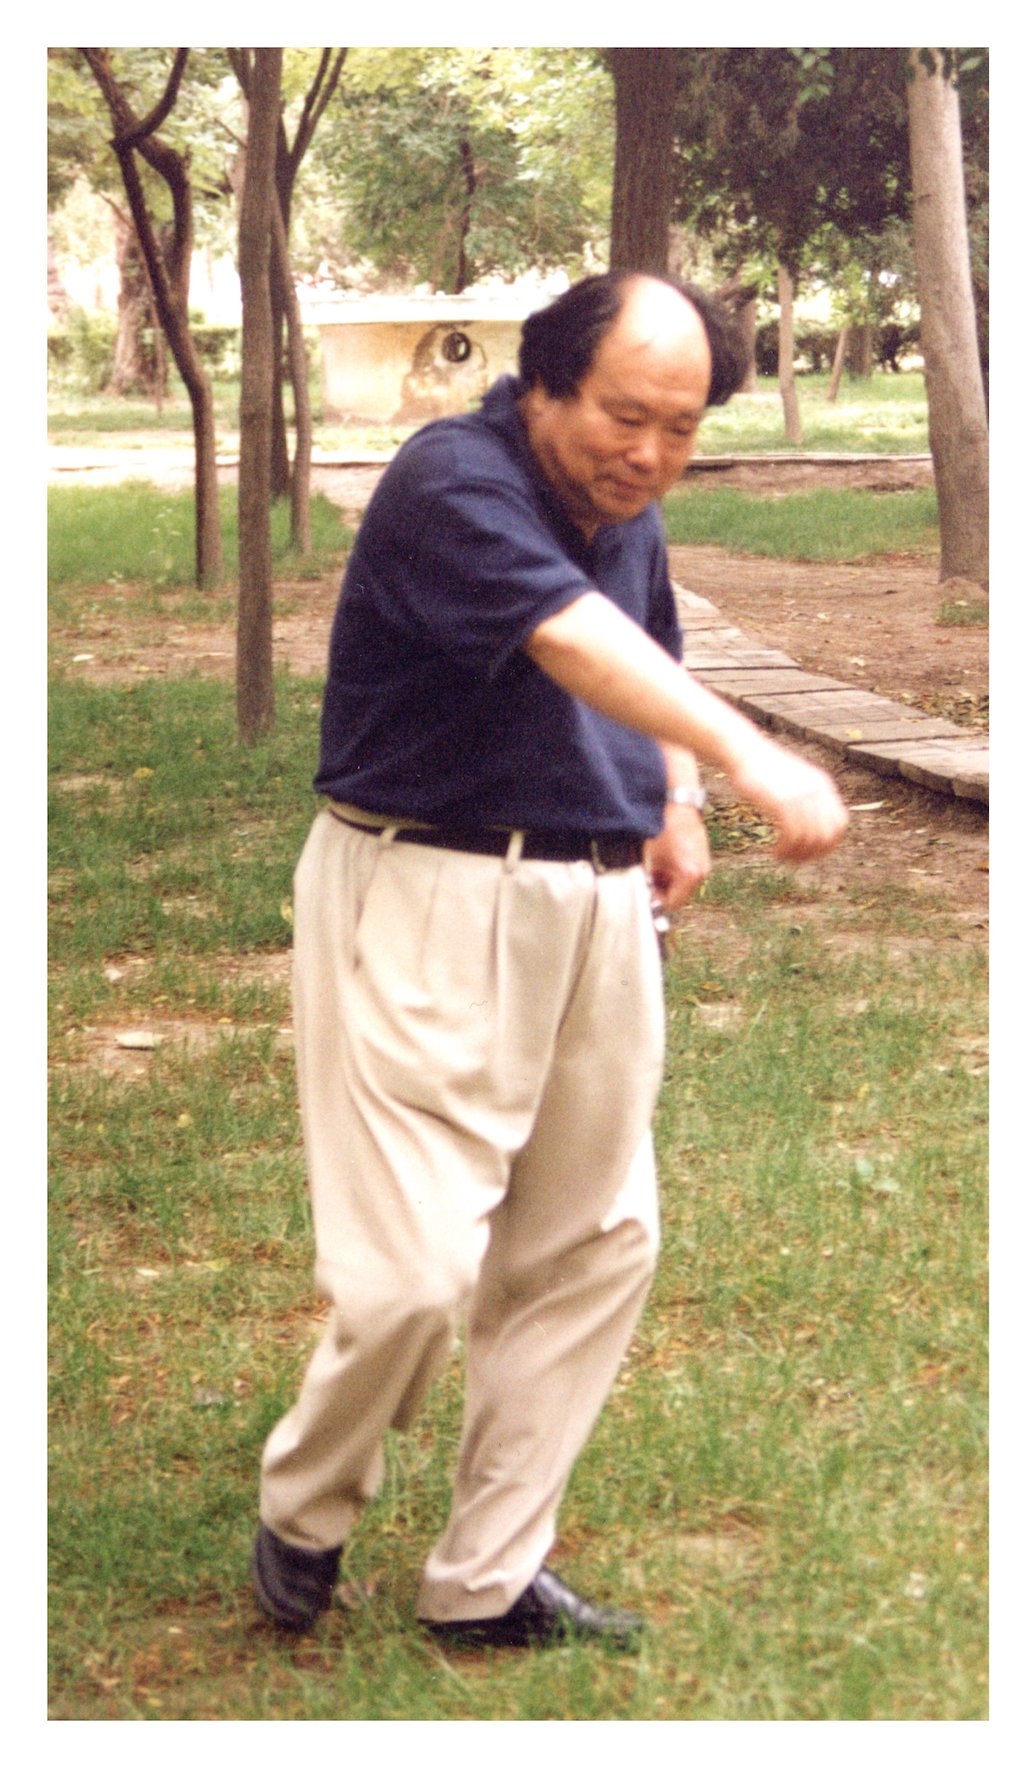 Wang Zhenfeng